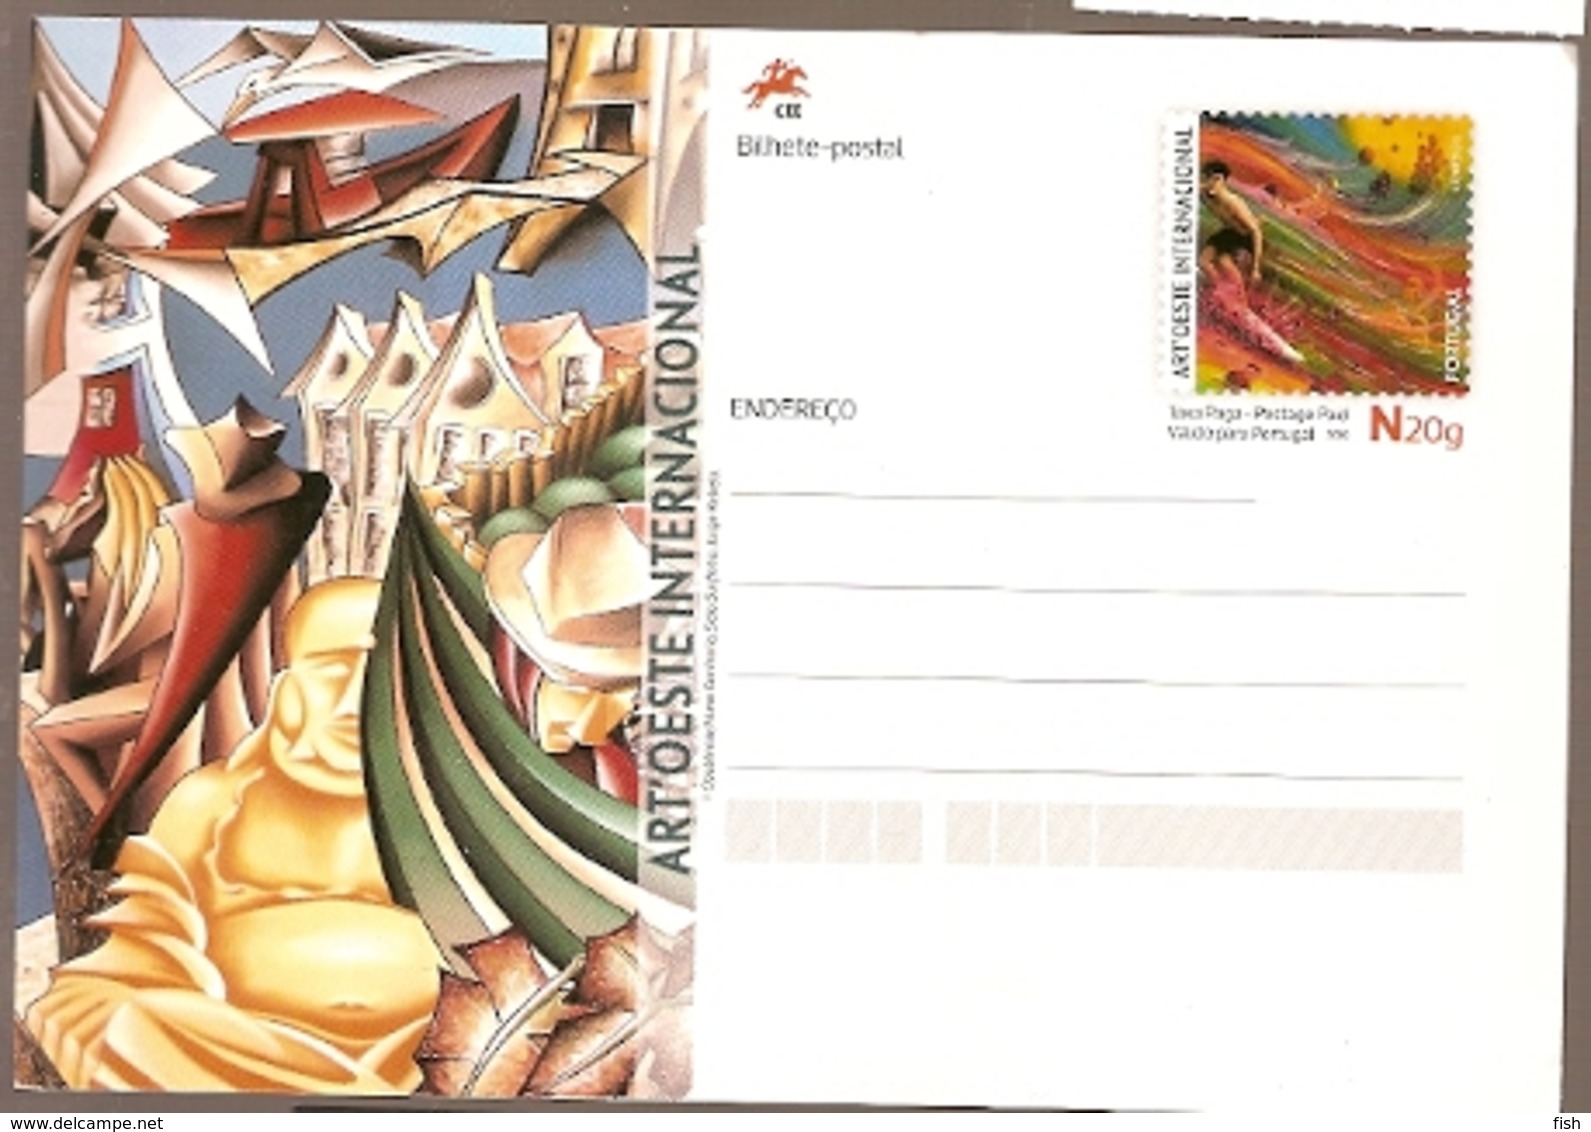 Portugal  ** & Postal Stationery, Art Oeste Internacional, Caldas Da Rainha 2019  (4534) - Pittura & Quadri